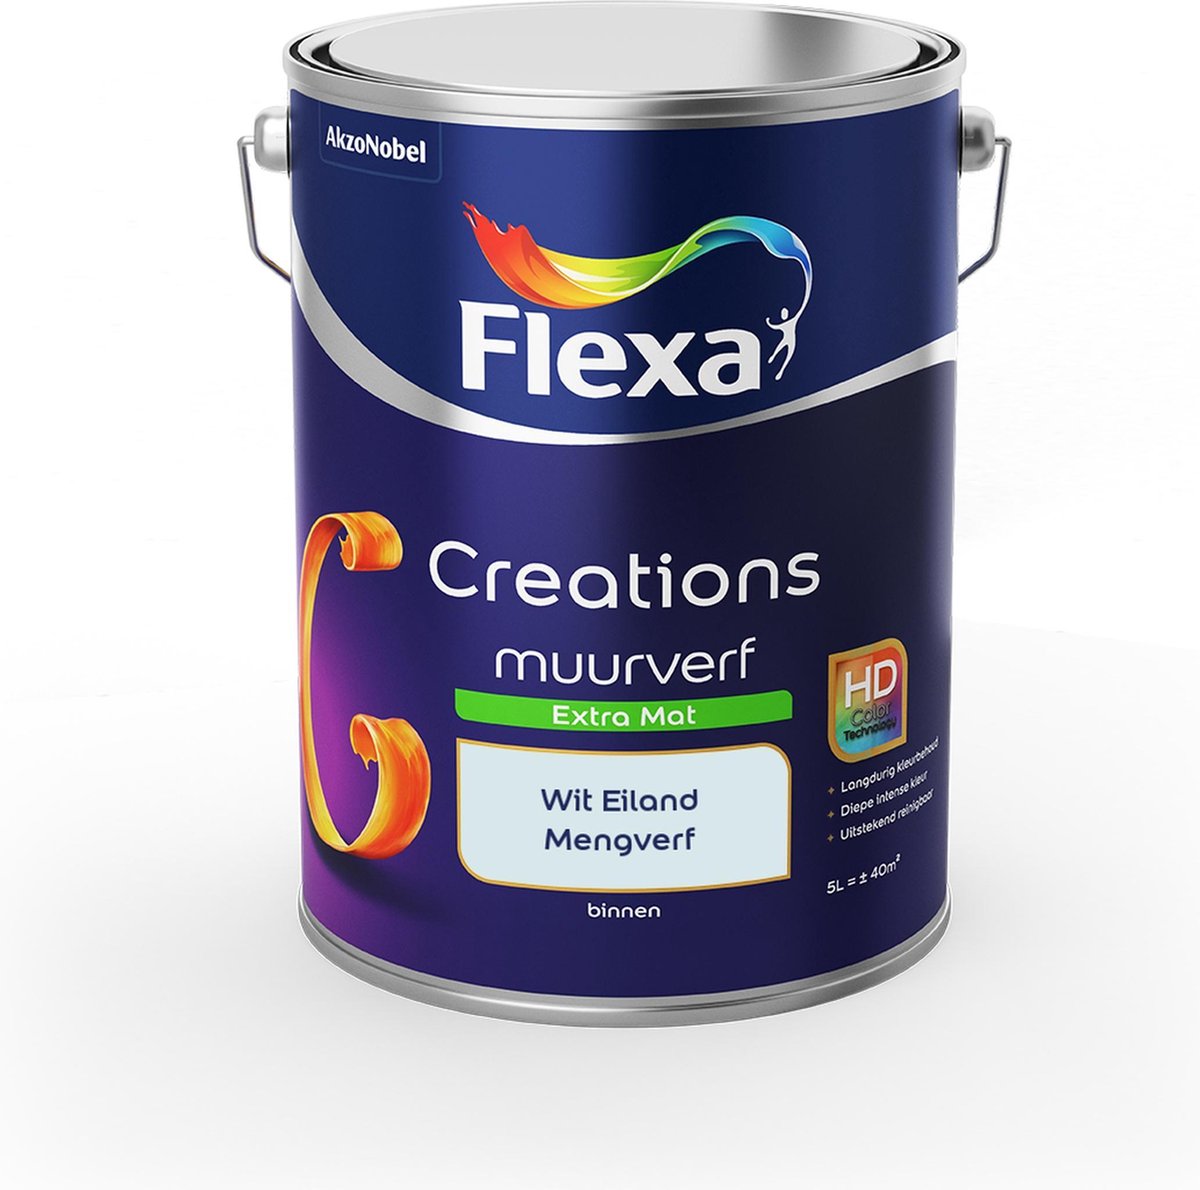 Flexa Creations Muurverf - Extra Mat - Mengkleuren Collectie - Wit Eiland - 5 liter